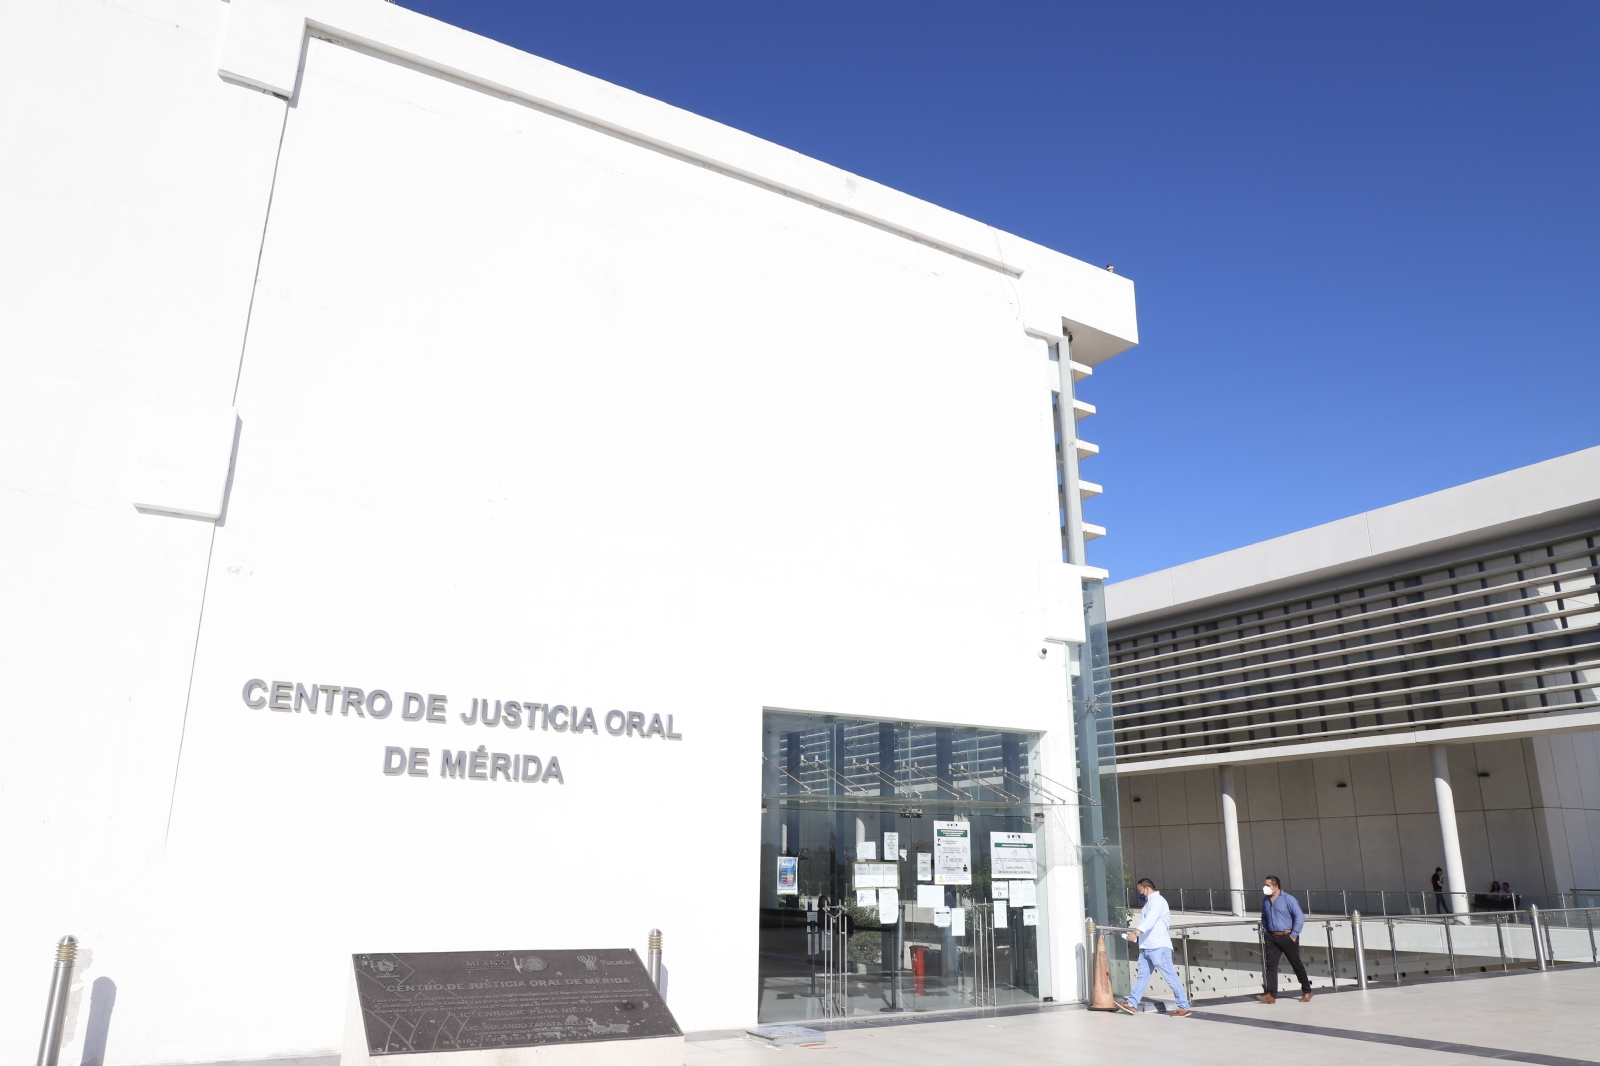 Los dos hombres mantendrán prisión preventiva por robar en una escuela de Mérida